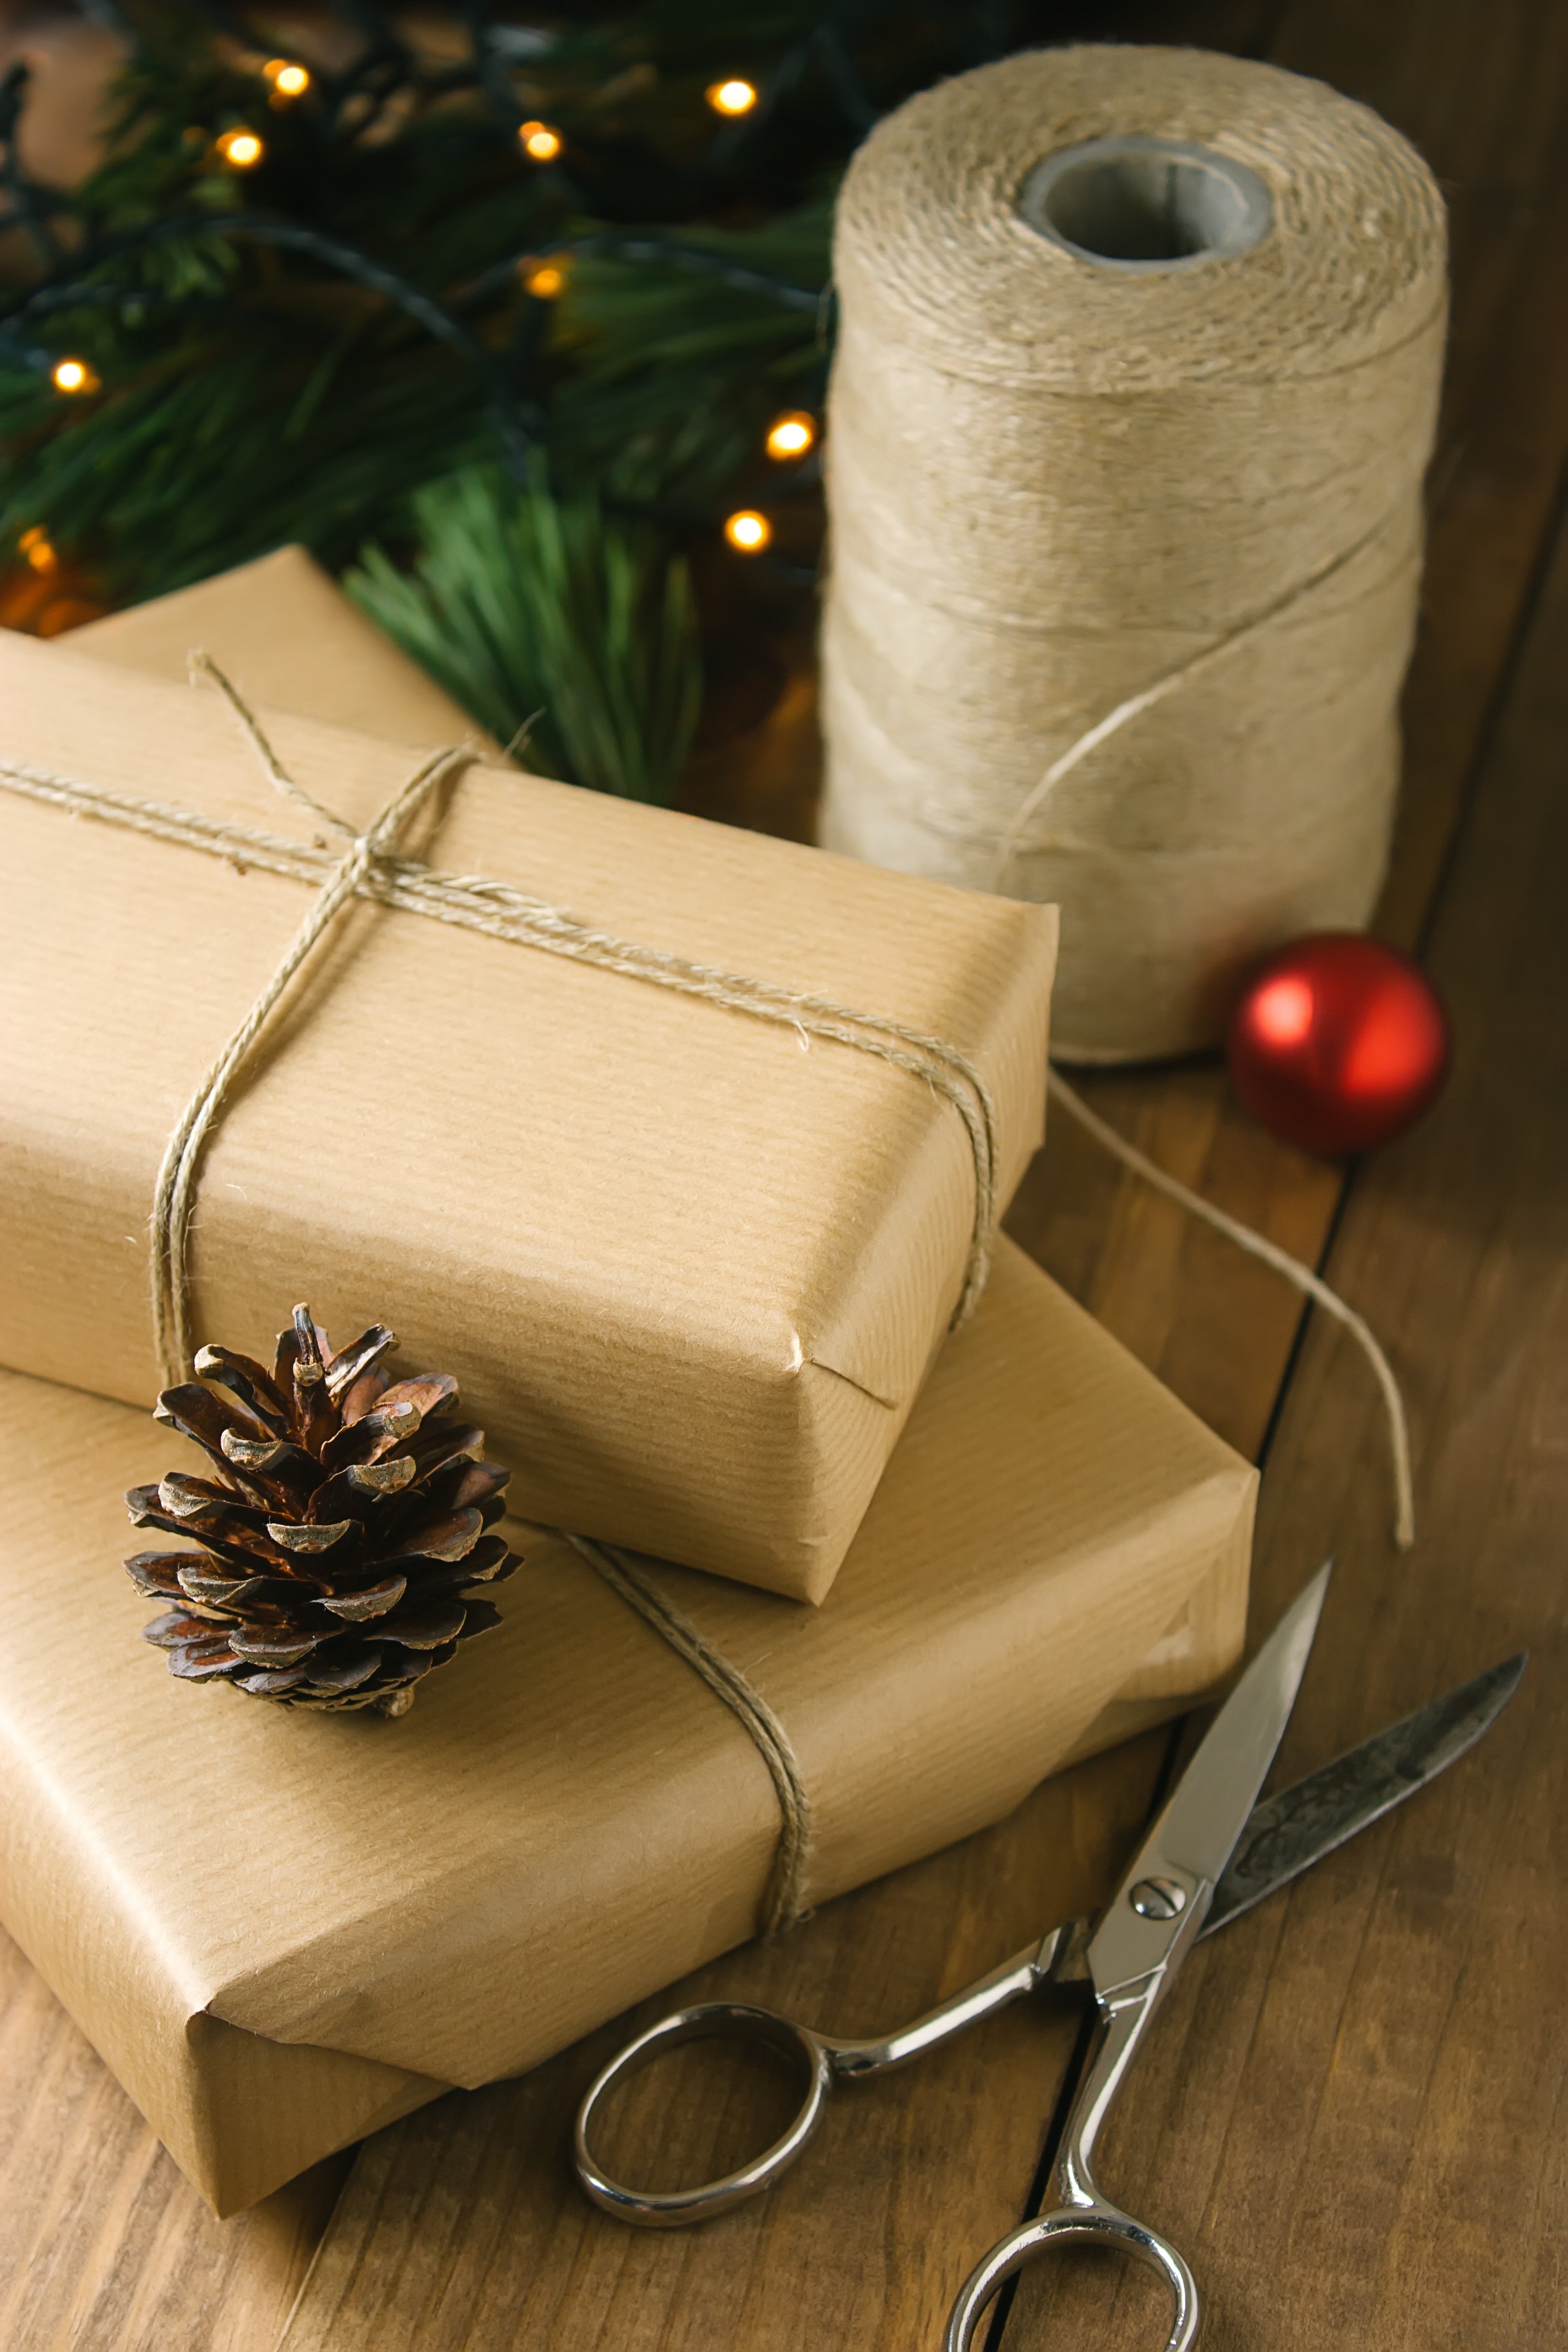 Homemade Holiday Gift Idea: Make A No-Sew Yoga Mat Strap